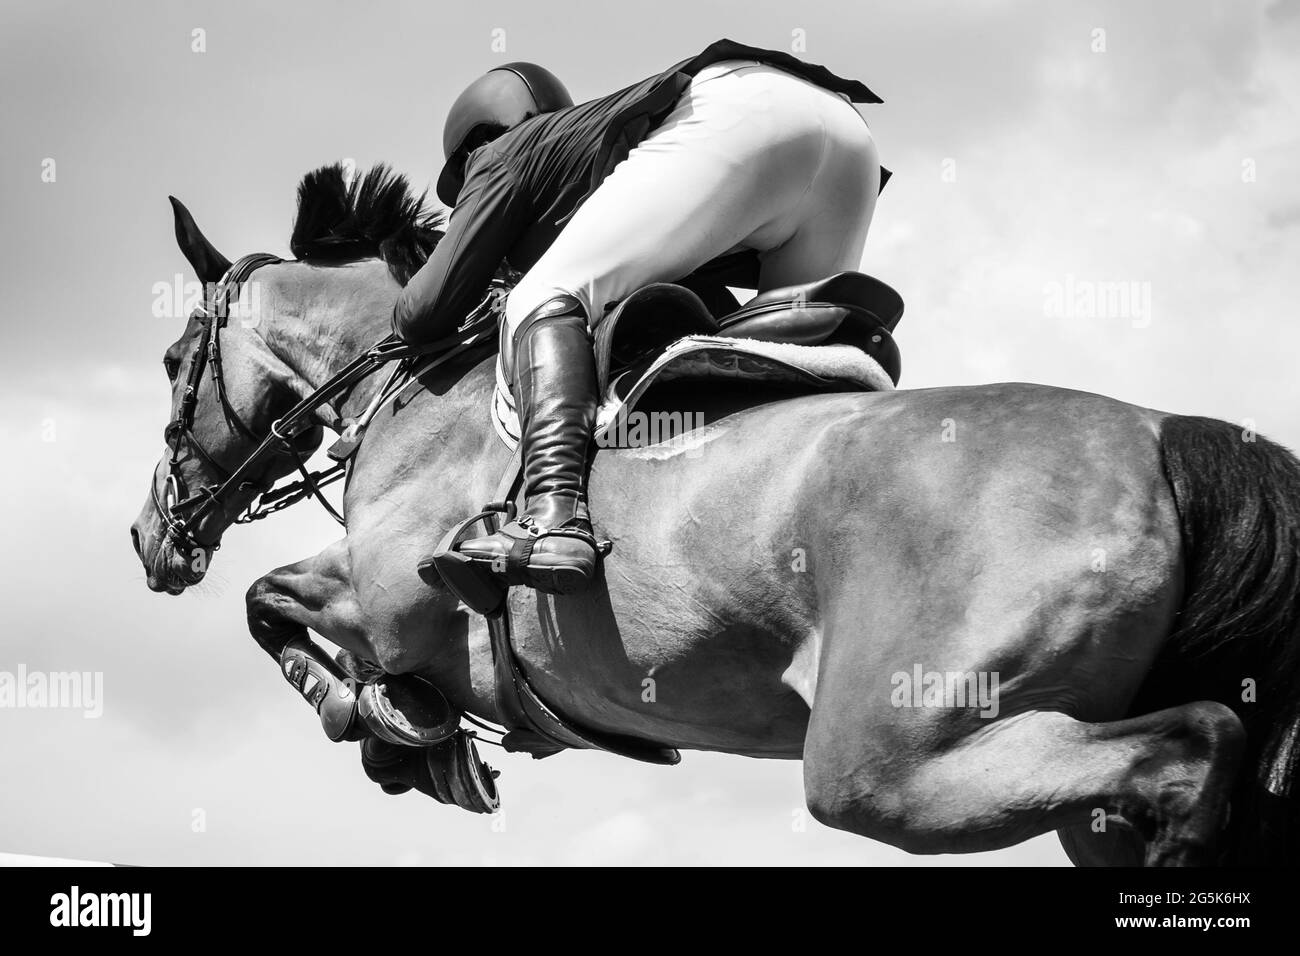 Bianco e nero Sport equestri a tema fotografico: Salto a cavallo, salto con spettacolo, equitazione. Foto Stock